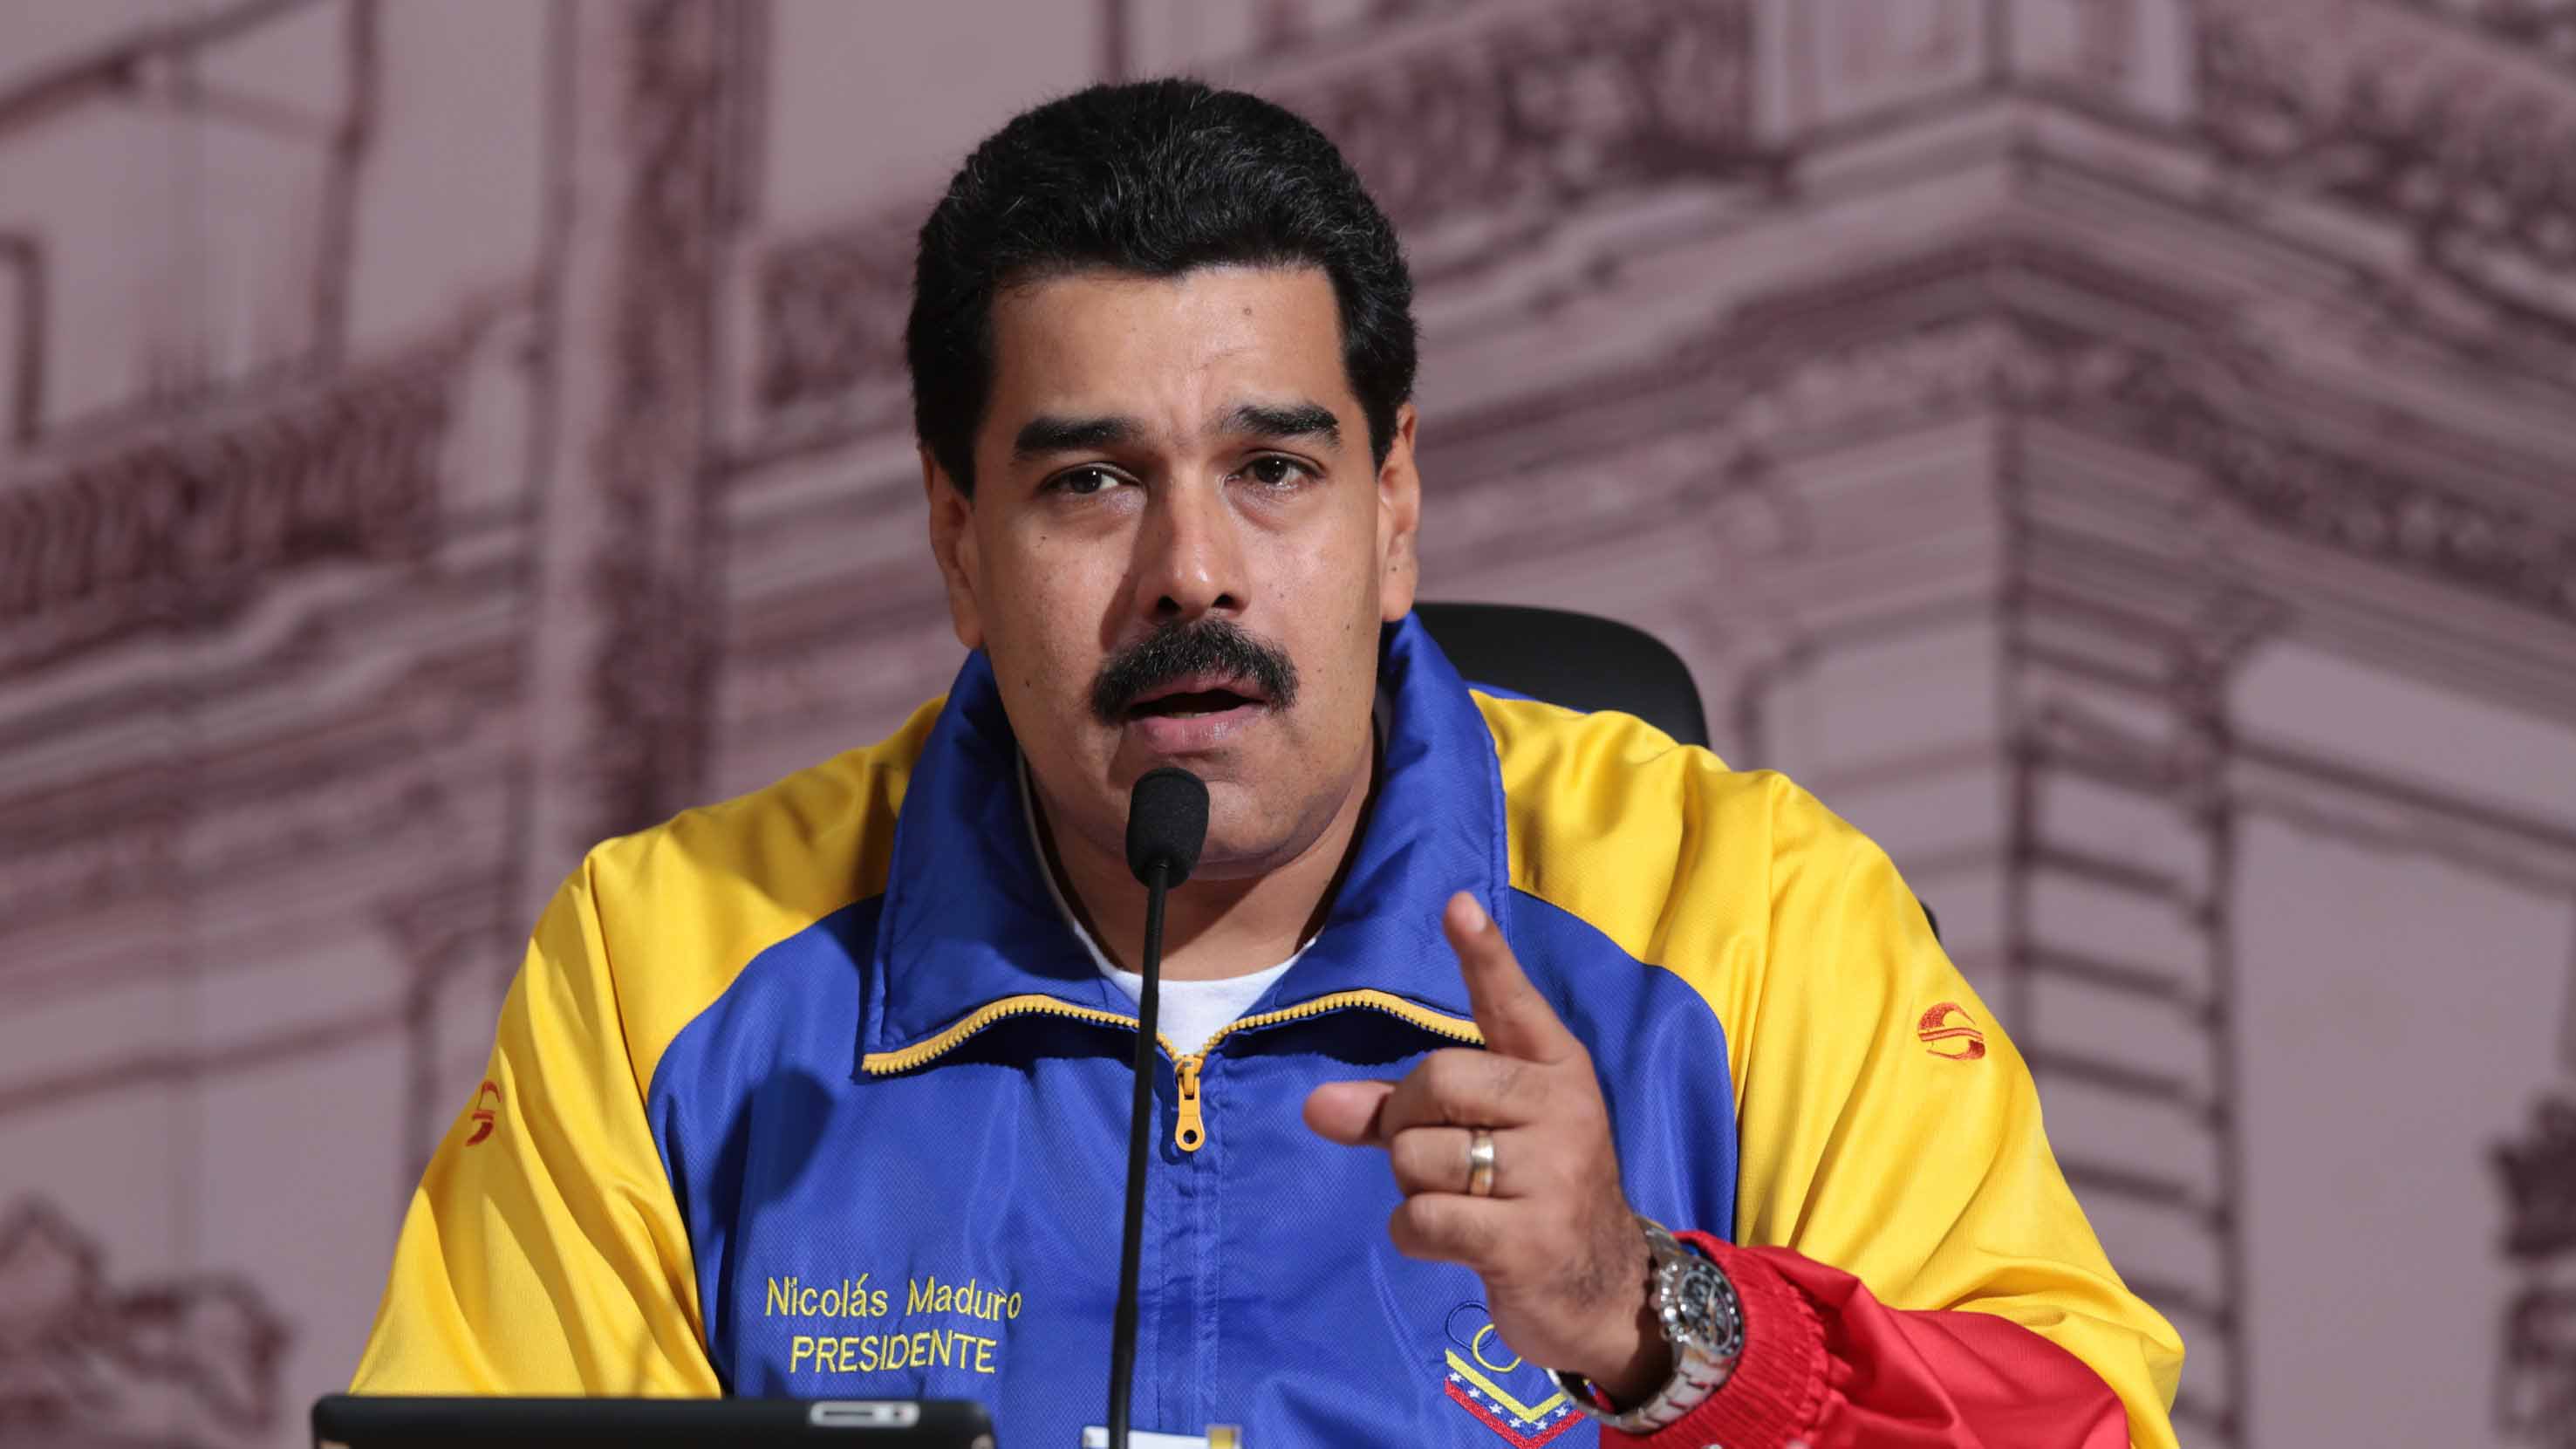 El Ejecutivo Nacional, Nicolás Maduro, aseguró defender el sistema de protección y seguridad social de los afectados